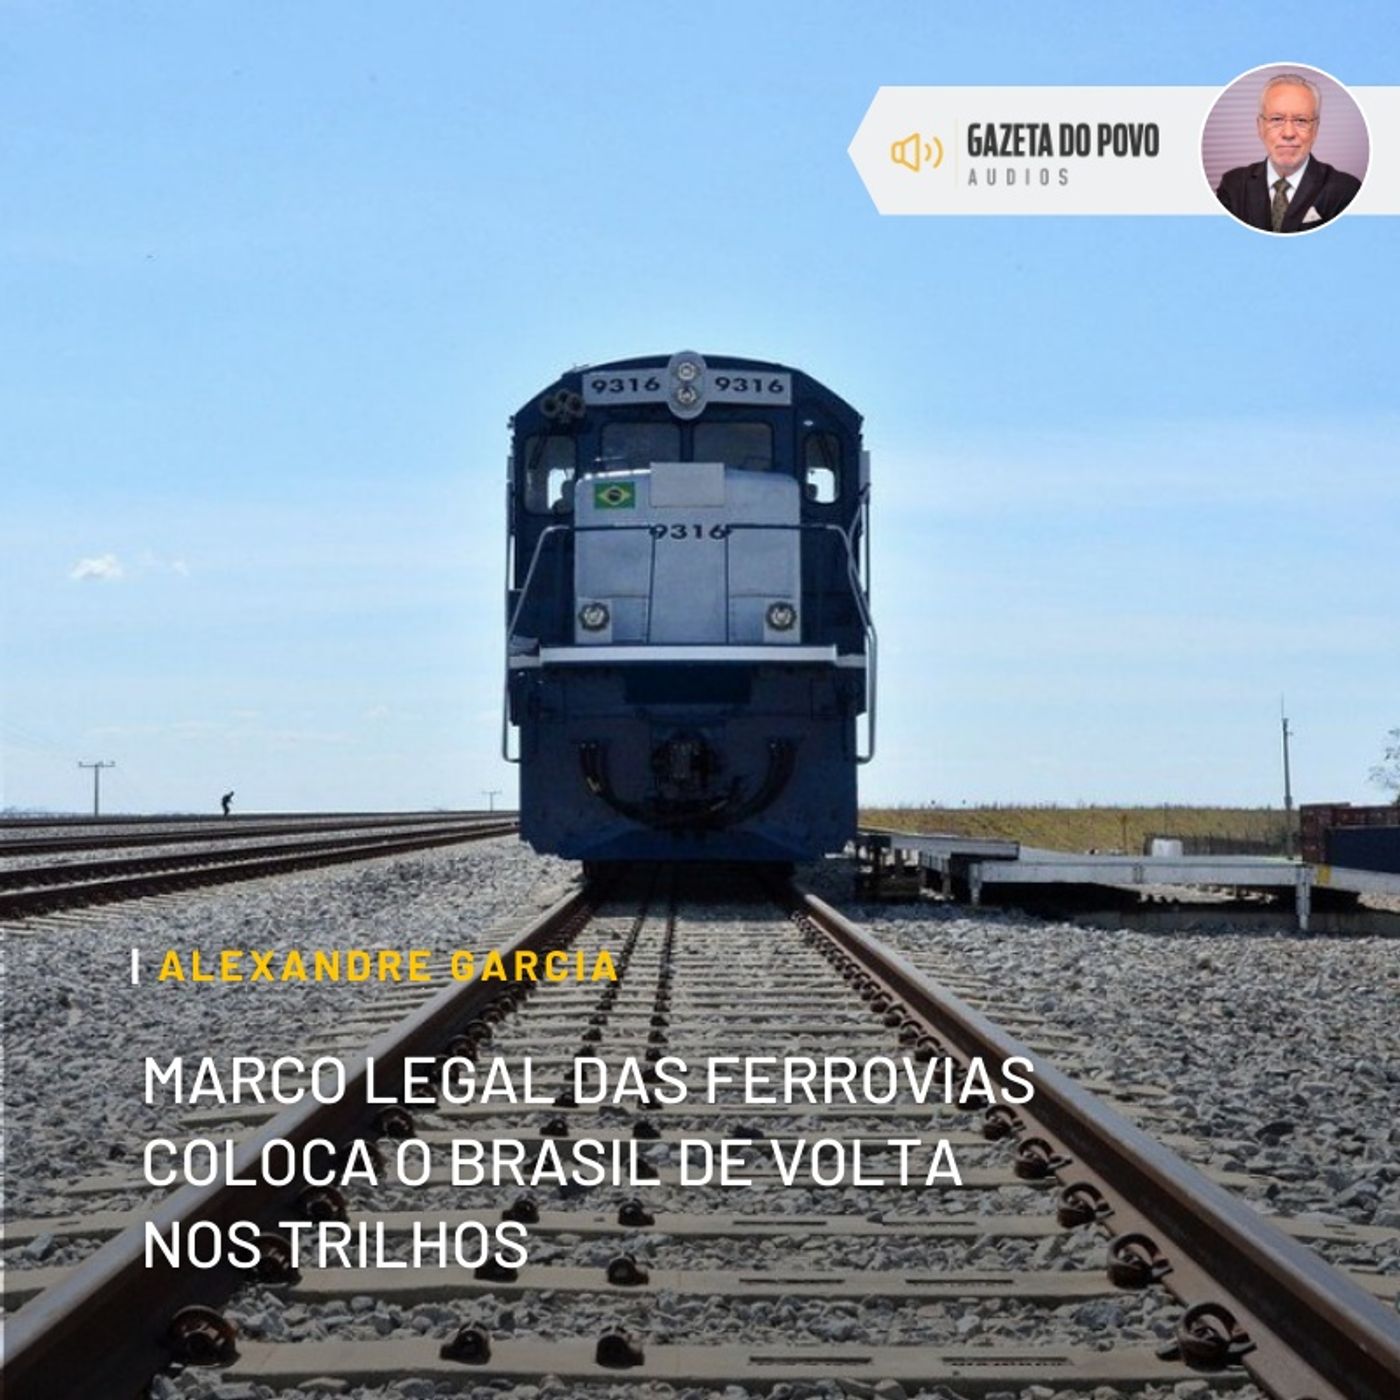 Marco legal das ferrovias coloca o Brasil de volta nos trilhos